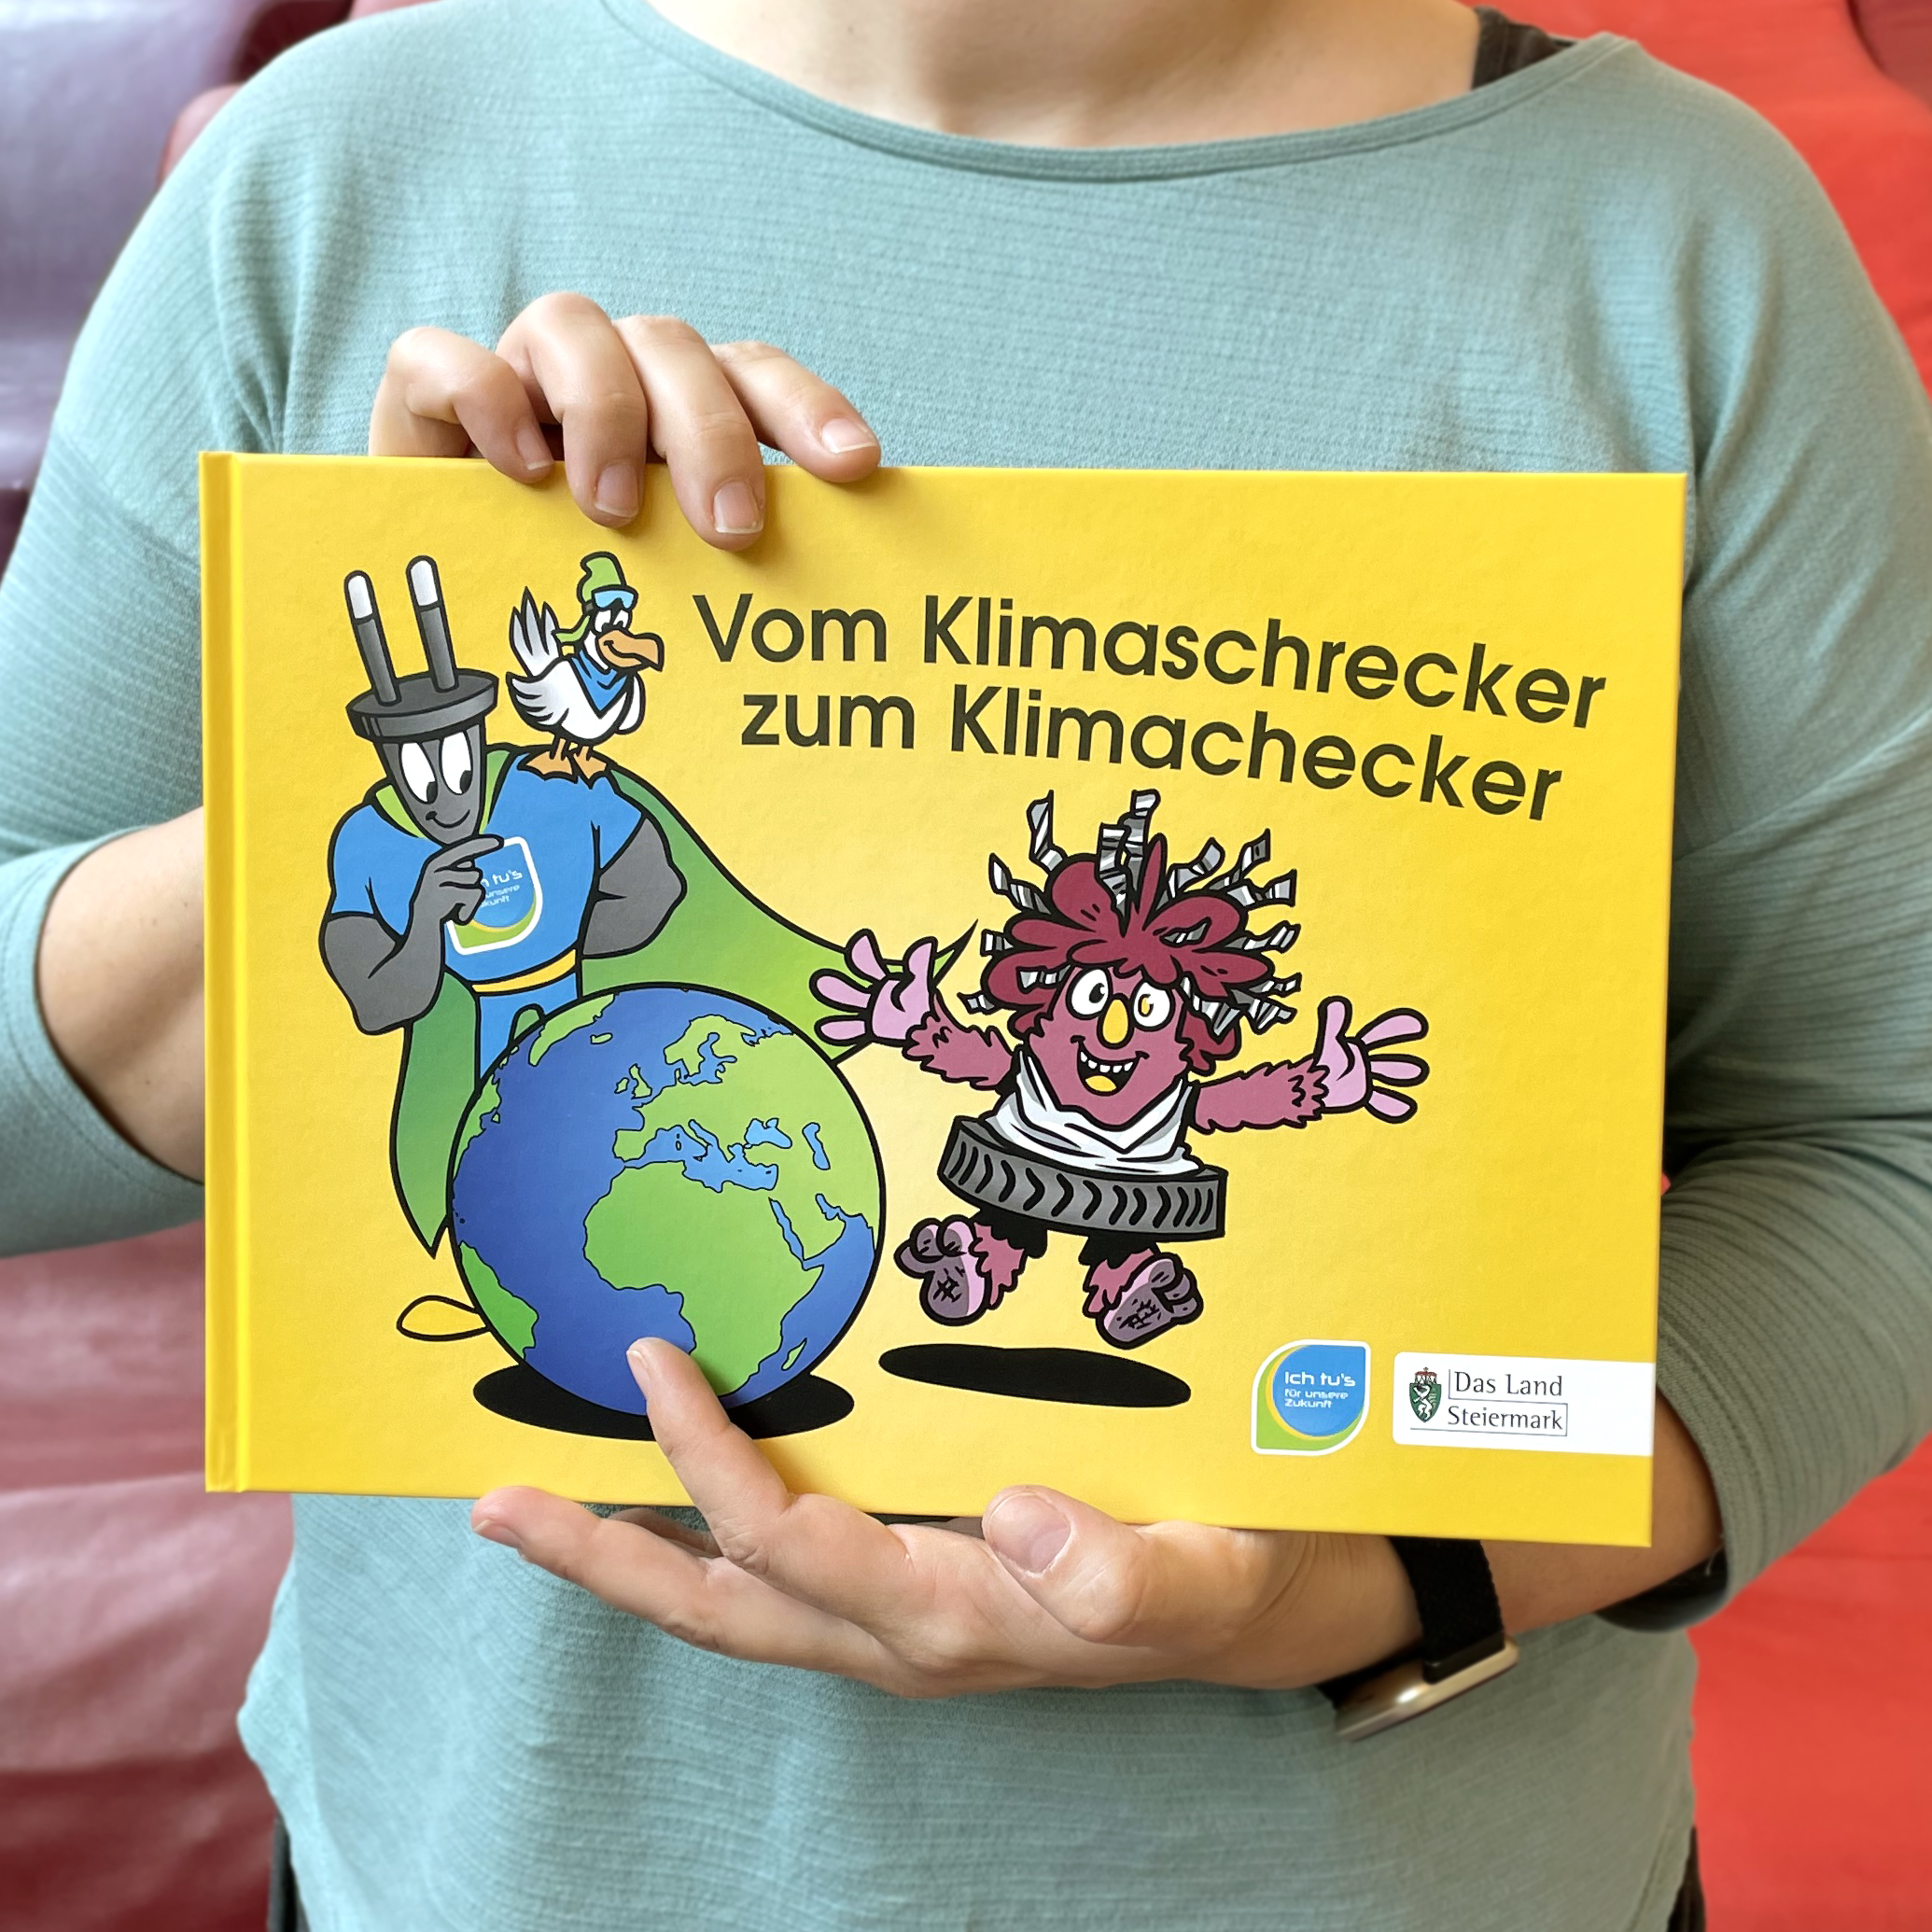 Frau hält Buch "Vom Klimaschrecker zum Klimachecker" in der Hand